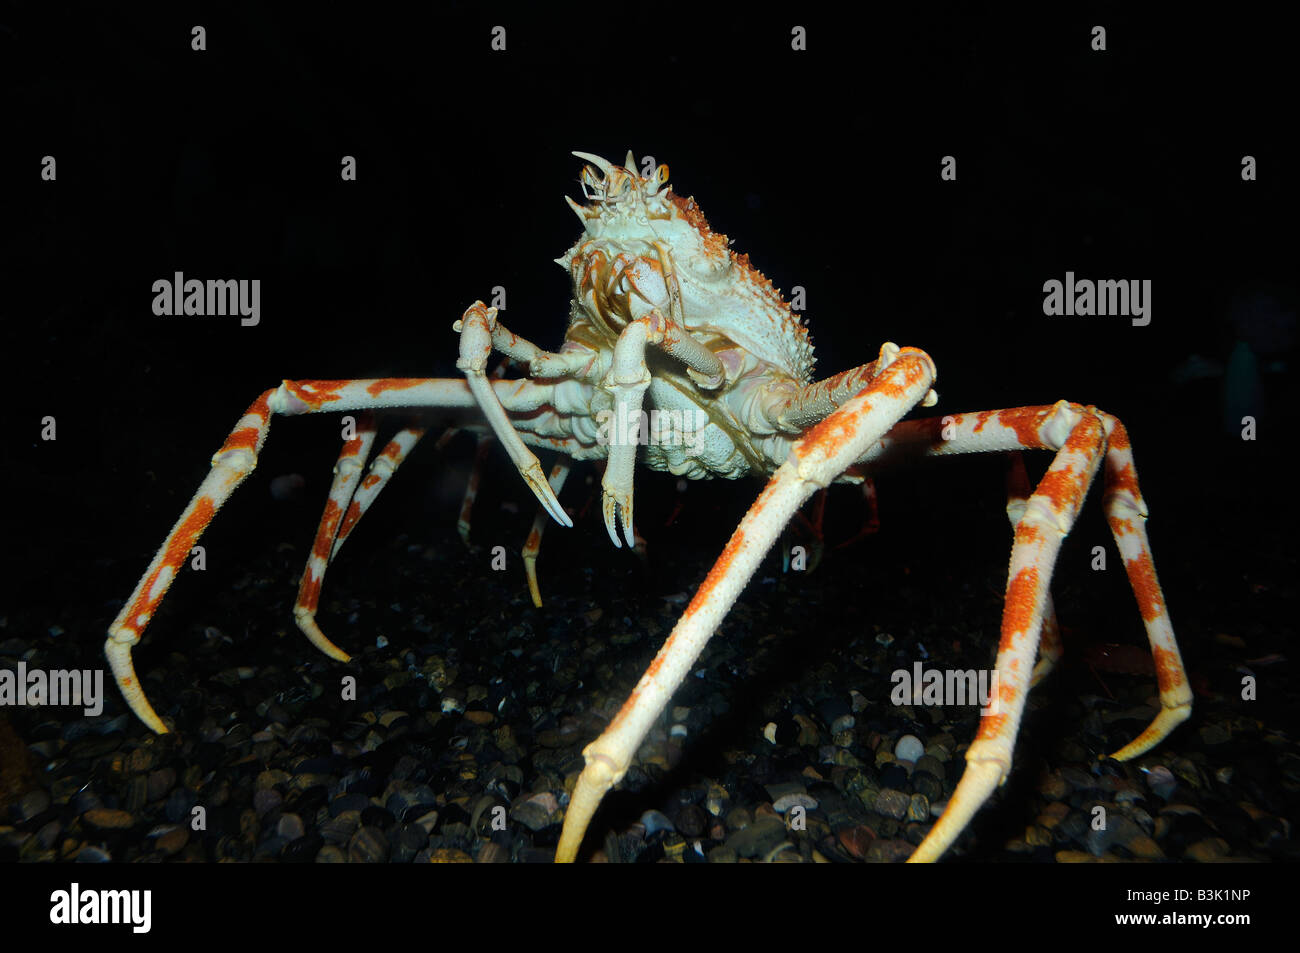 Macrocheira kaempferi crabe araignée japonais prisonnier Banque D'Images